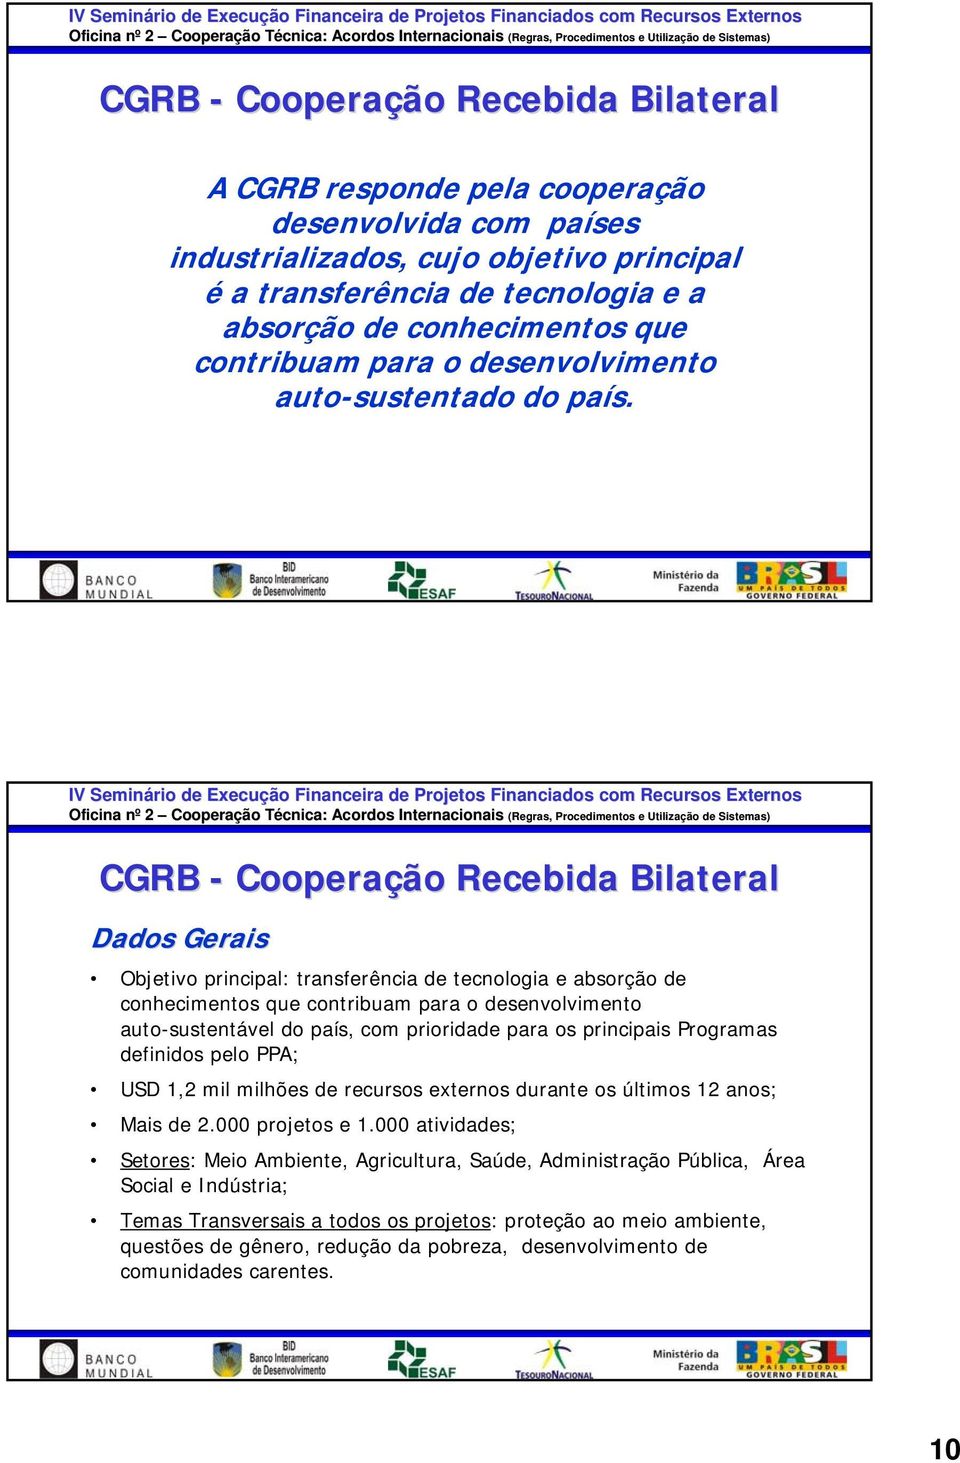 CGRB - Cooperação Recebida Bilateral Dados Gerais Objetivo principal: transferência de tecnologia e absorção de conhecimentos que contribuam para o desenvolvimento auto-sustentável do país, com